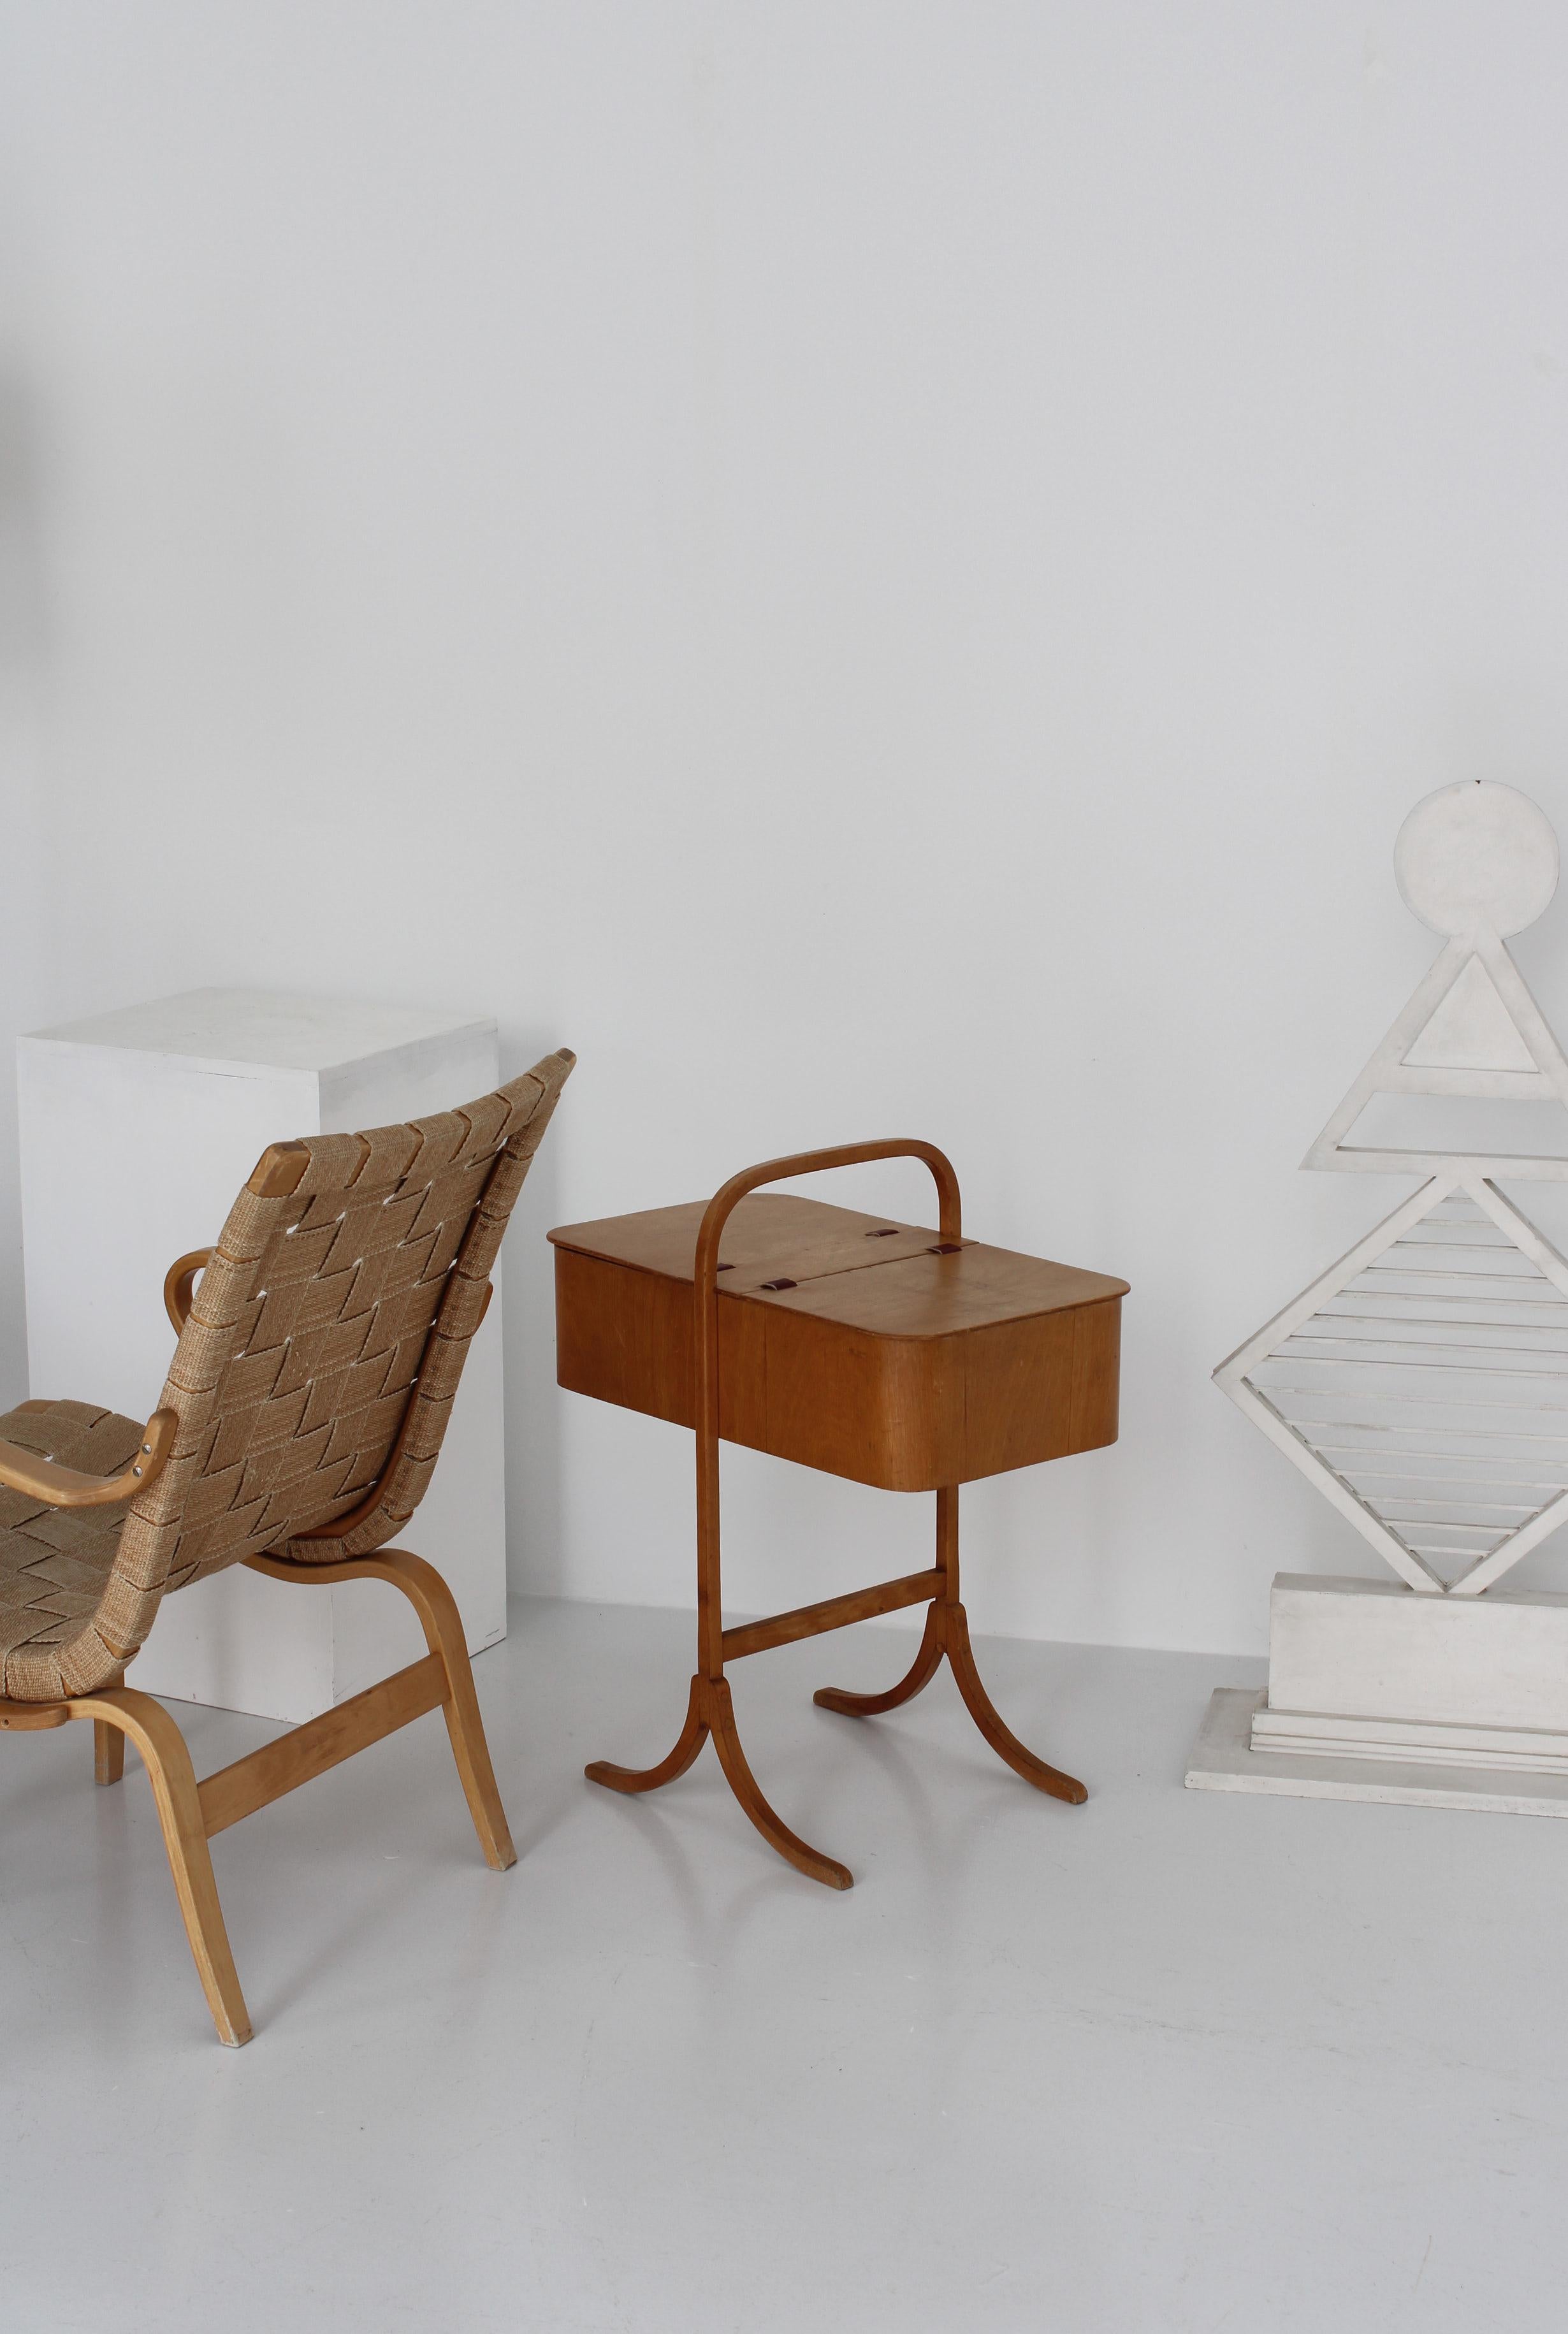 Pièce de design rare et importante du début de l'ère du mobilier moderne danois. Cette boîte à couture a été fabriquée chez Fritz Hansen & Son, à Copenhague, dans les années 1930. Il est fabriqué en bois de hêtre laqué et le couvercle est fixé par